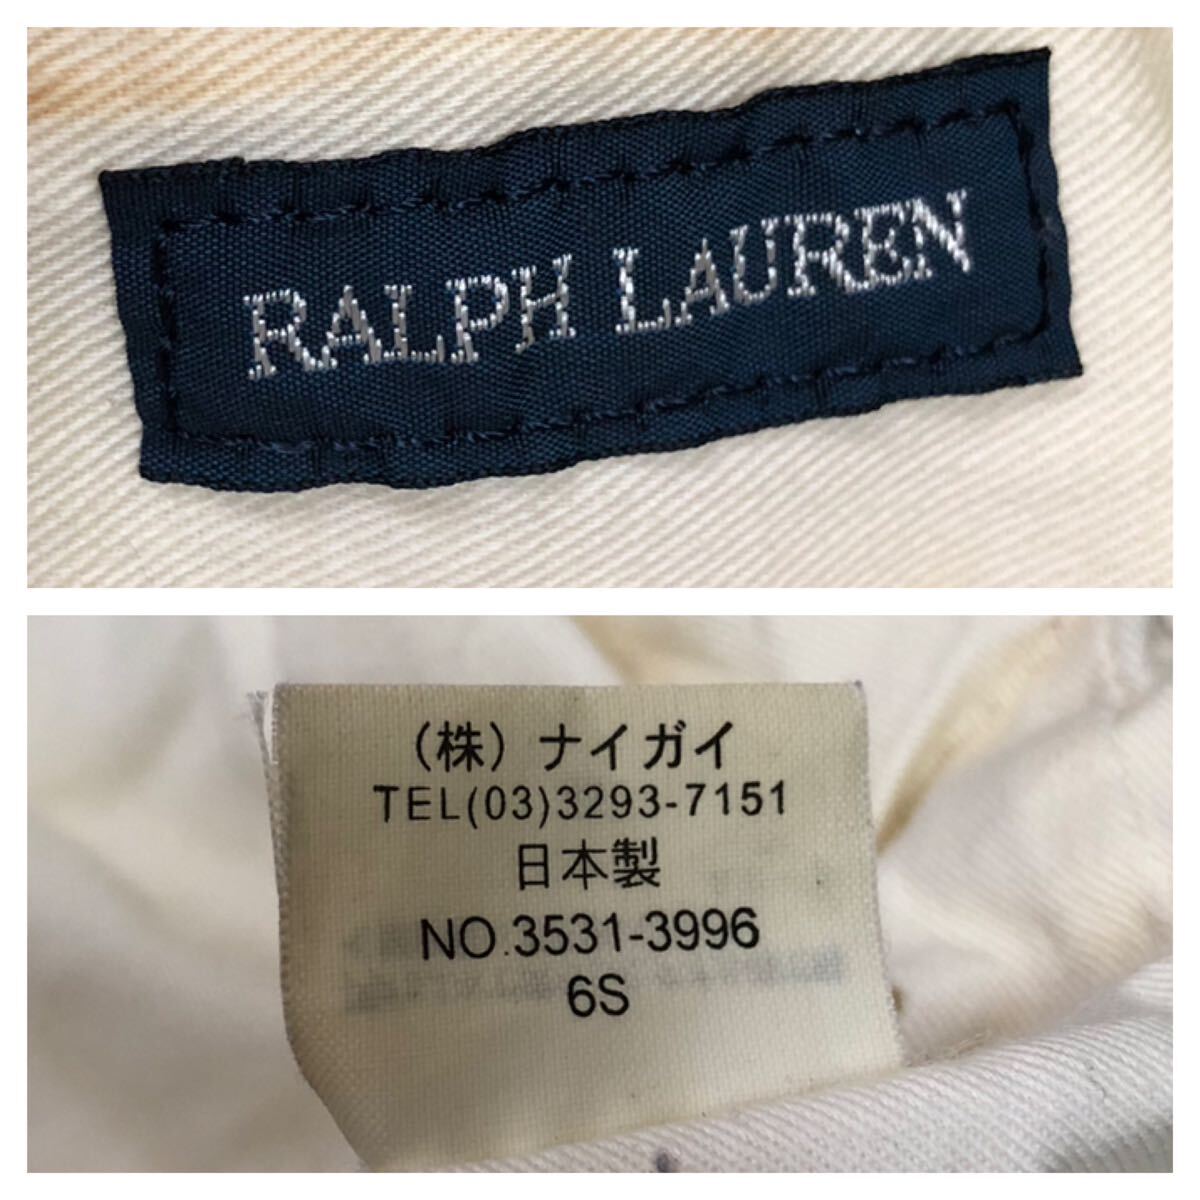 894*RALPH LAUREN Ralph Lauren * большой po колено вышивка полоса рисунок большая сумка белый × голубой 